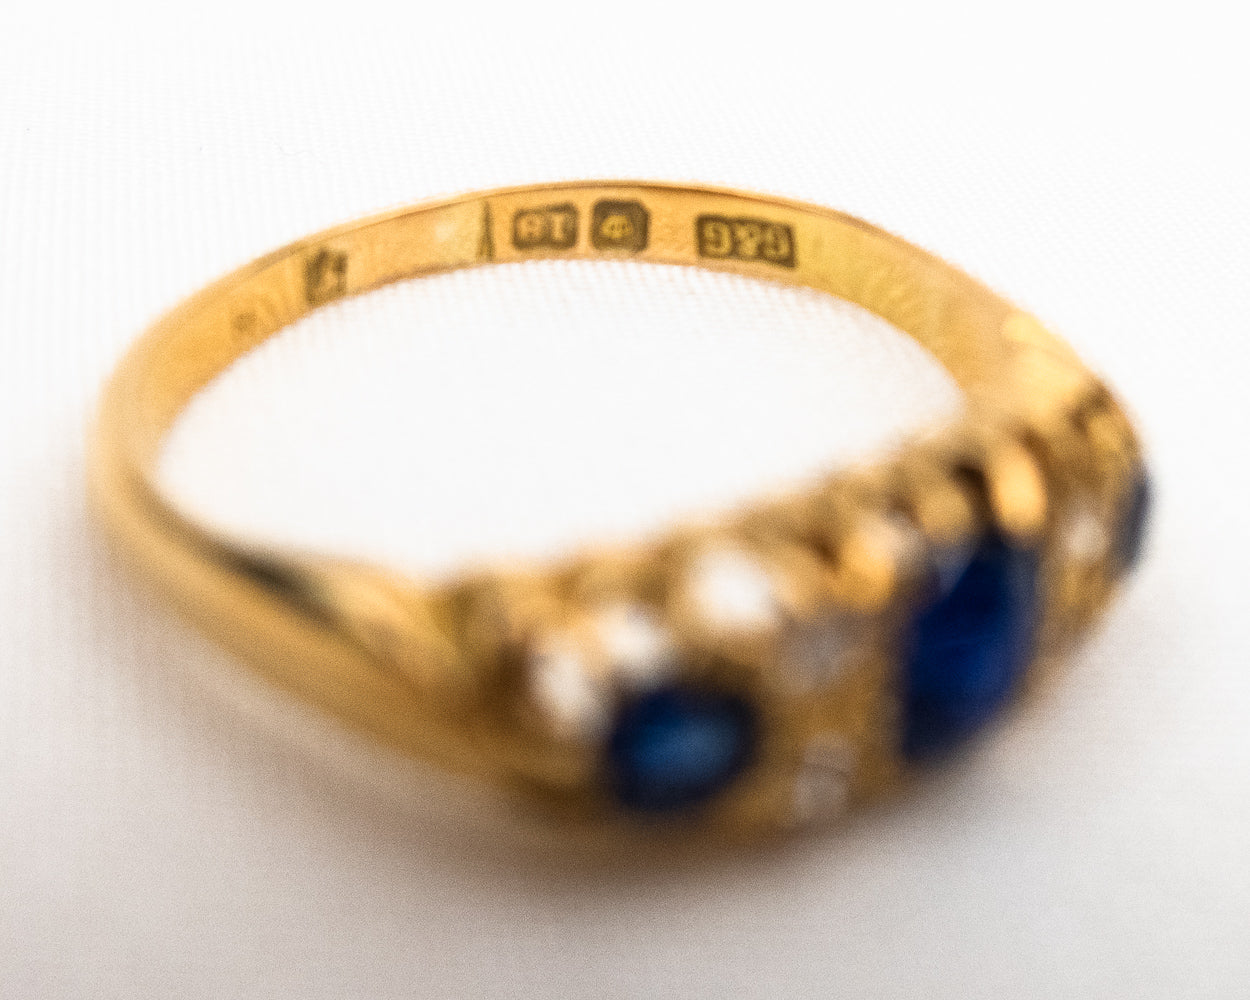 Victorian Sapphire & Diamond Ring